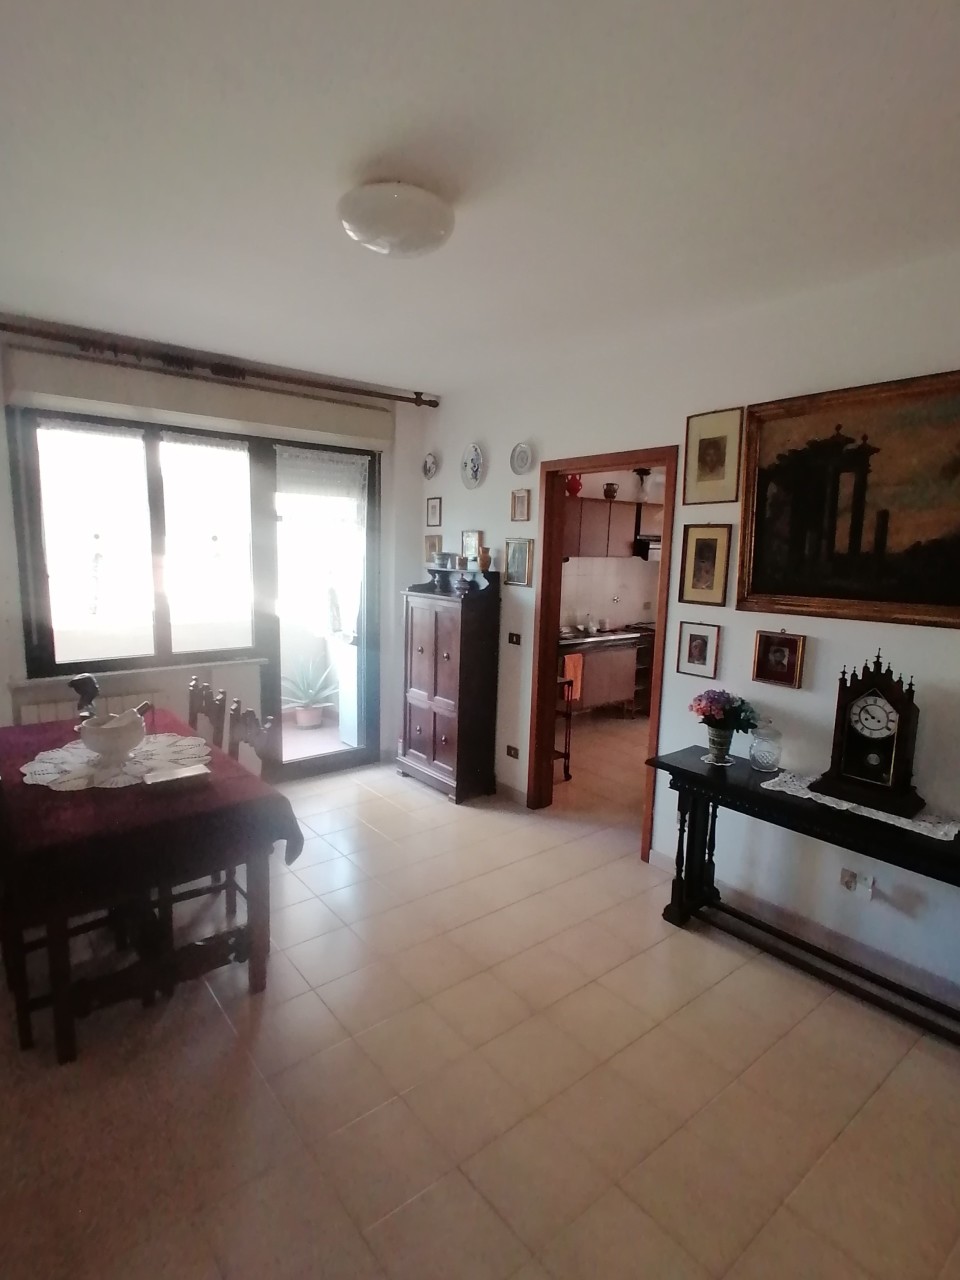 Appartamento in vendita a Savona, 5 locali, prezzo € 130.000 | PortaleAgenzieImmobiliari.it